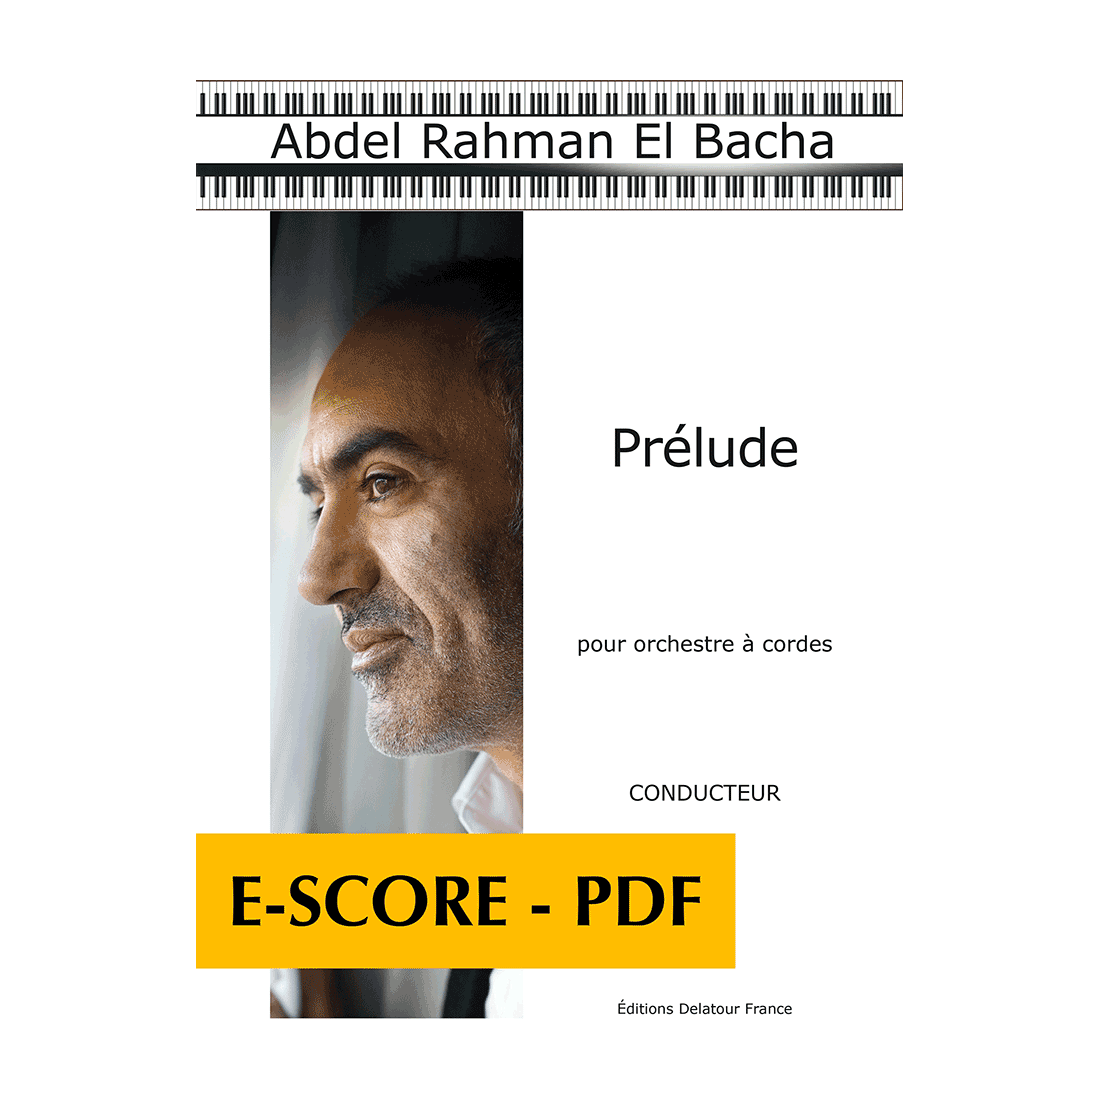 Prélude for string orchestra (FULL SCORE) - E-score PDF